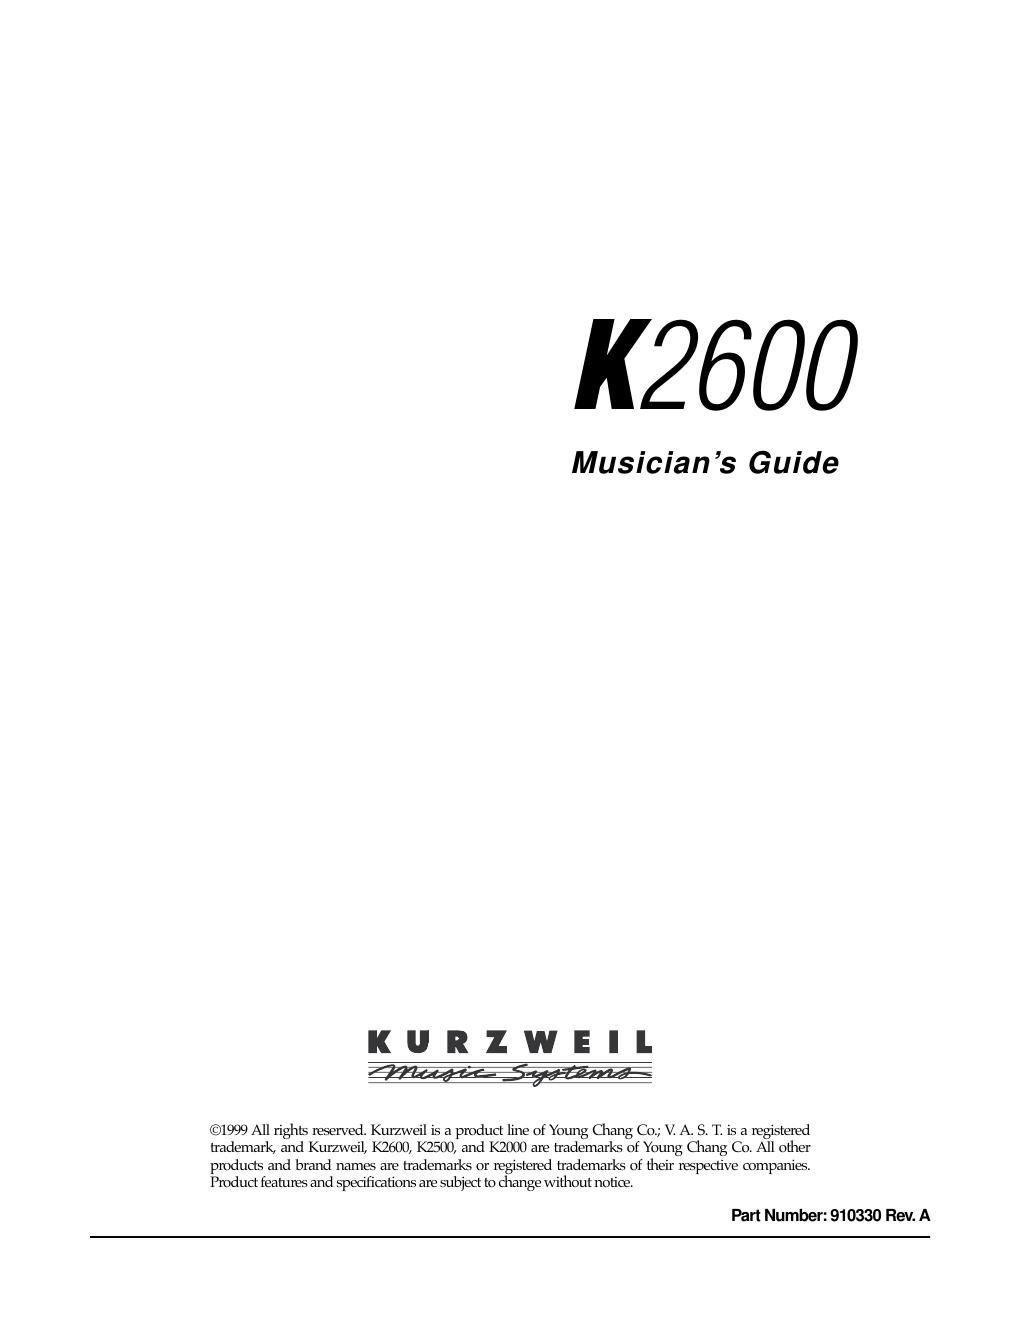 kurzweil k2600 musician guide